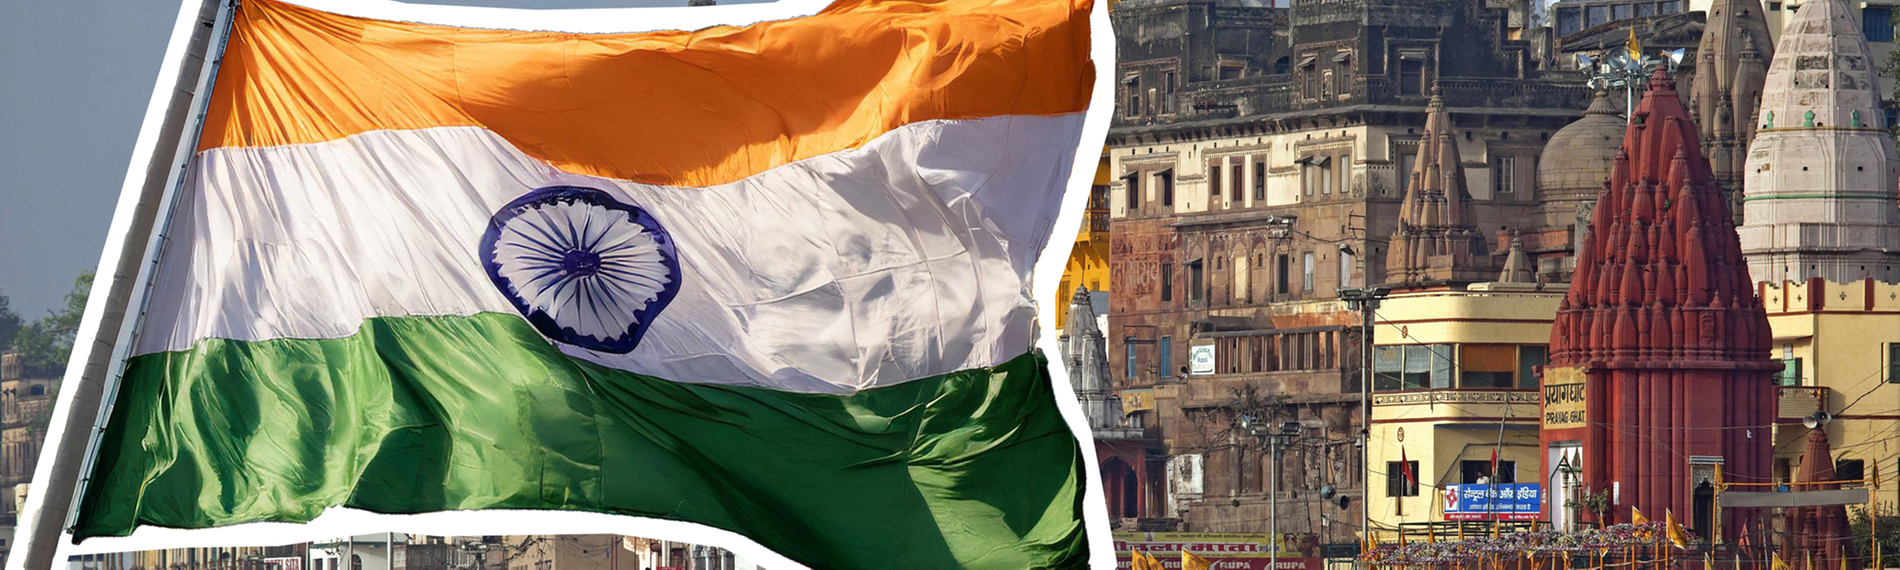 Indien und indische Flagge